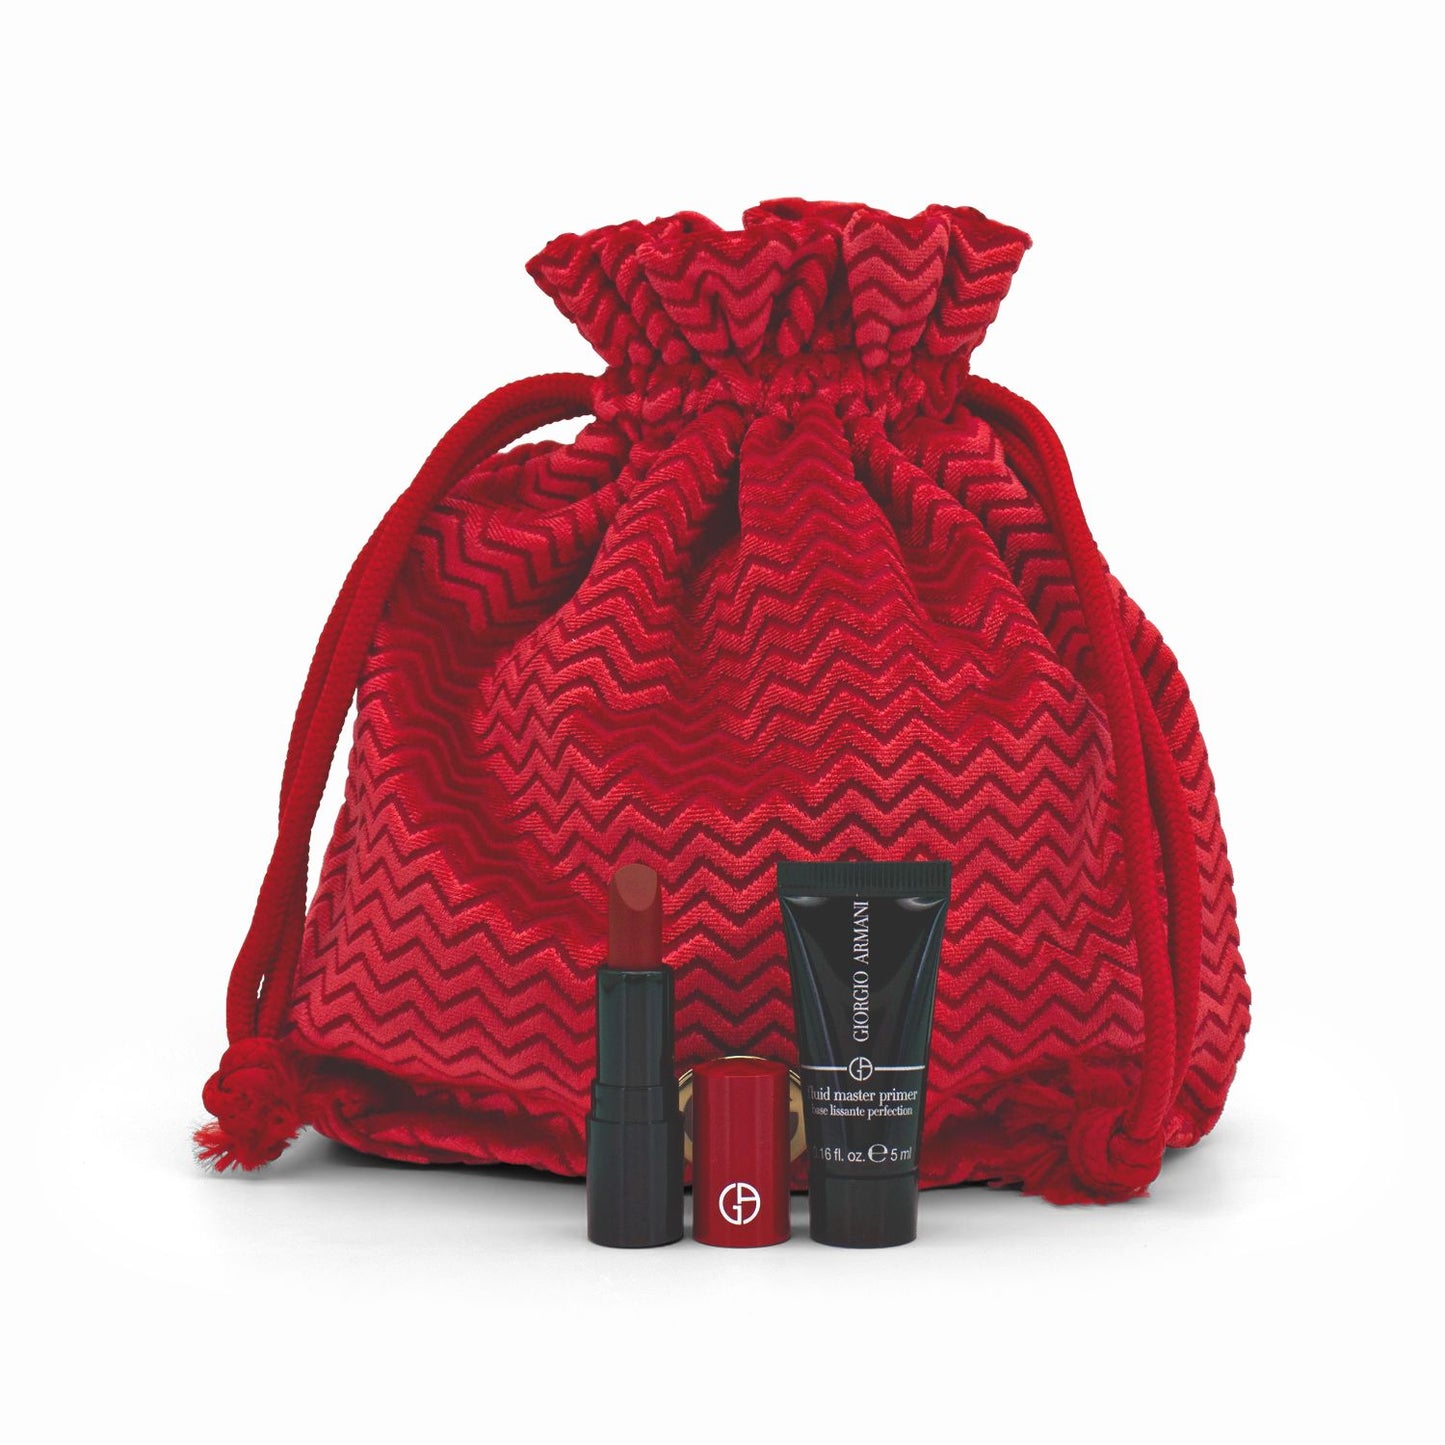 Giorgio Armani Red Premium Pouch with Primer & Lipstick Set - Missing Box